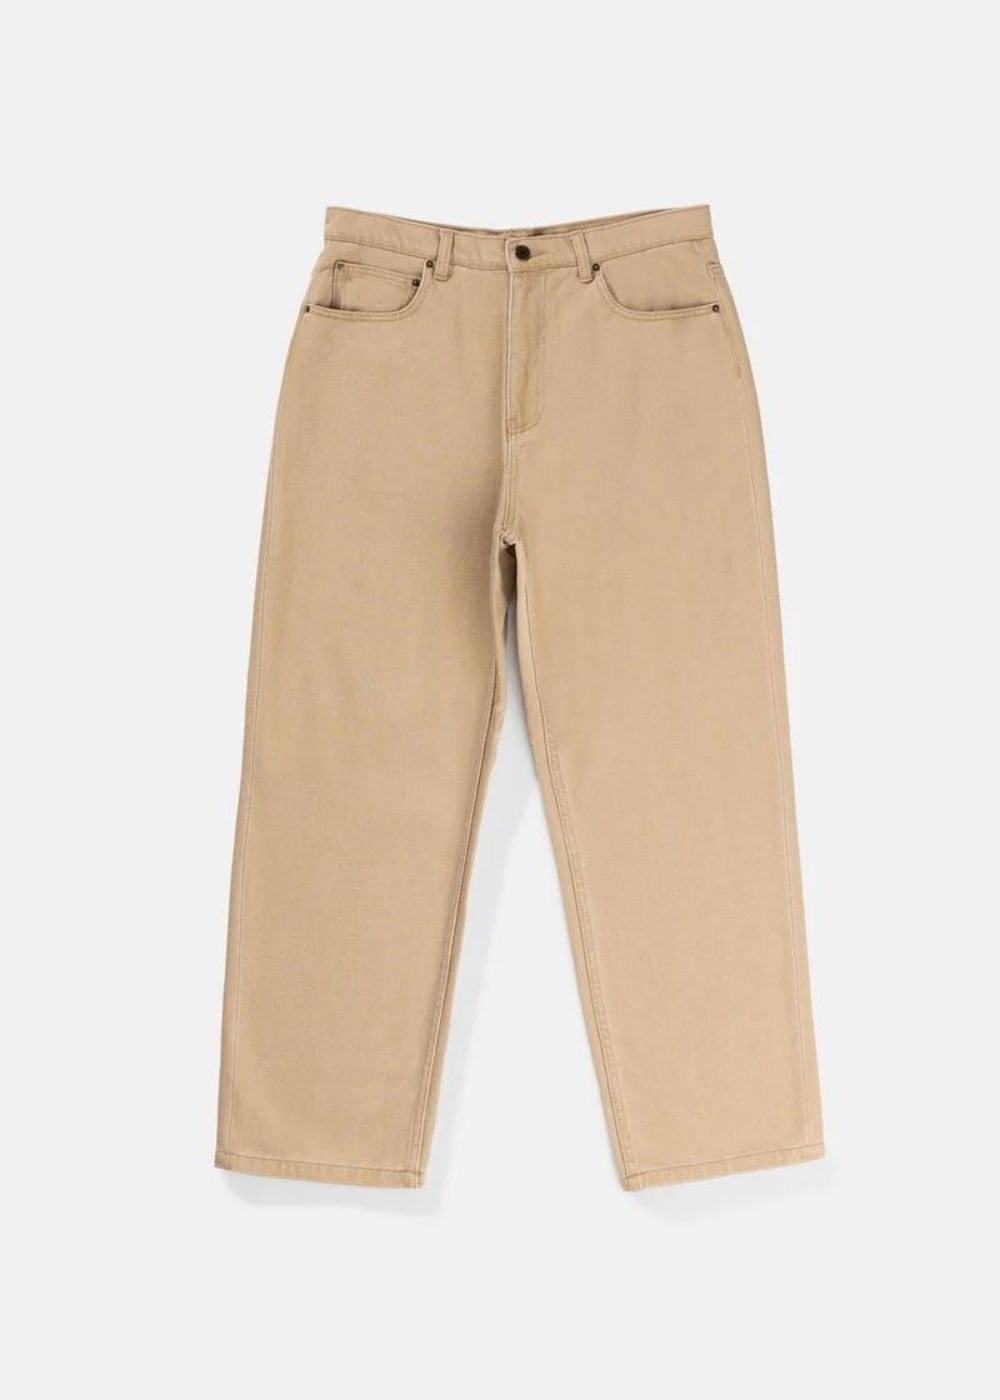 Essential Jean - מכנסים ארוכים 100% כותנה צבע חאקי